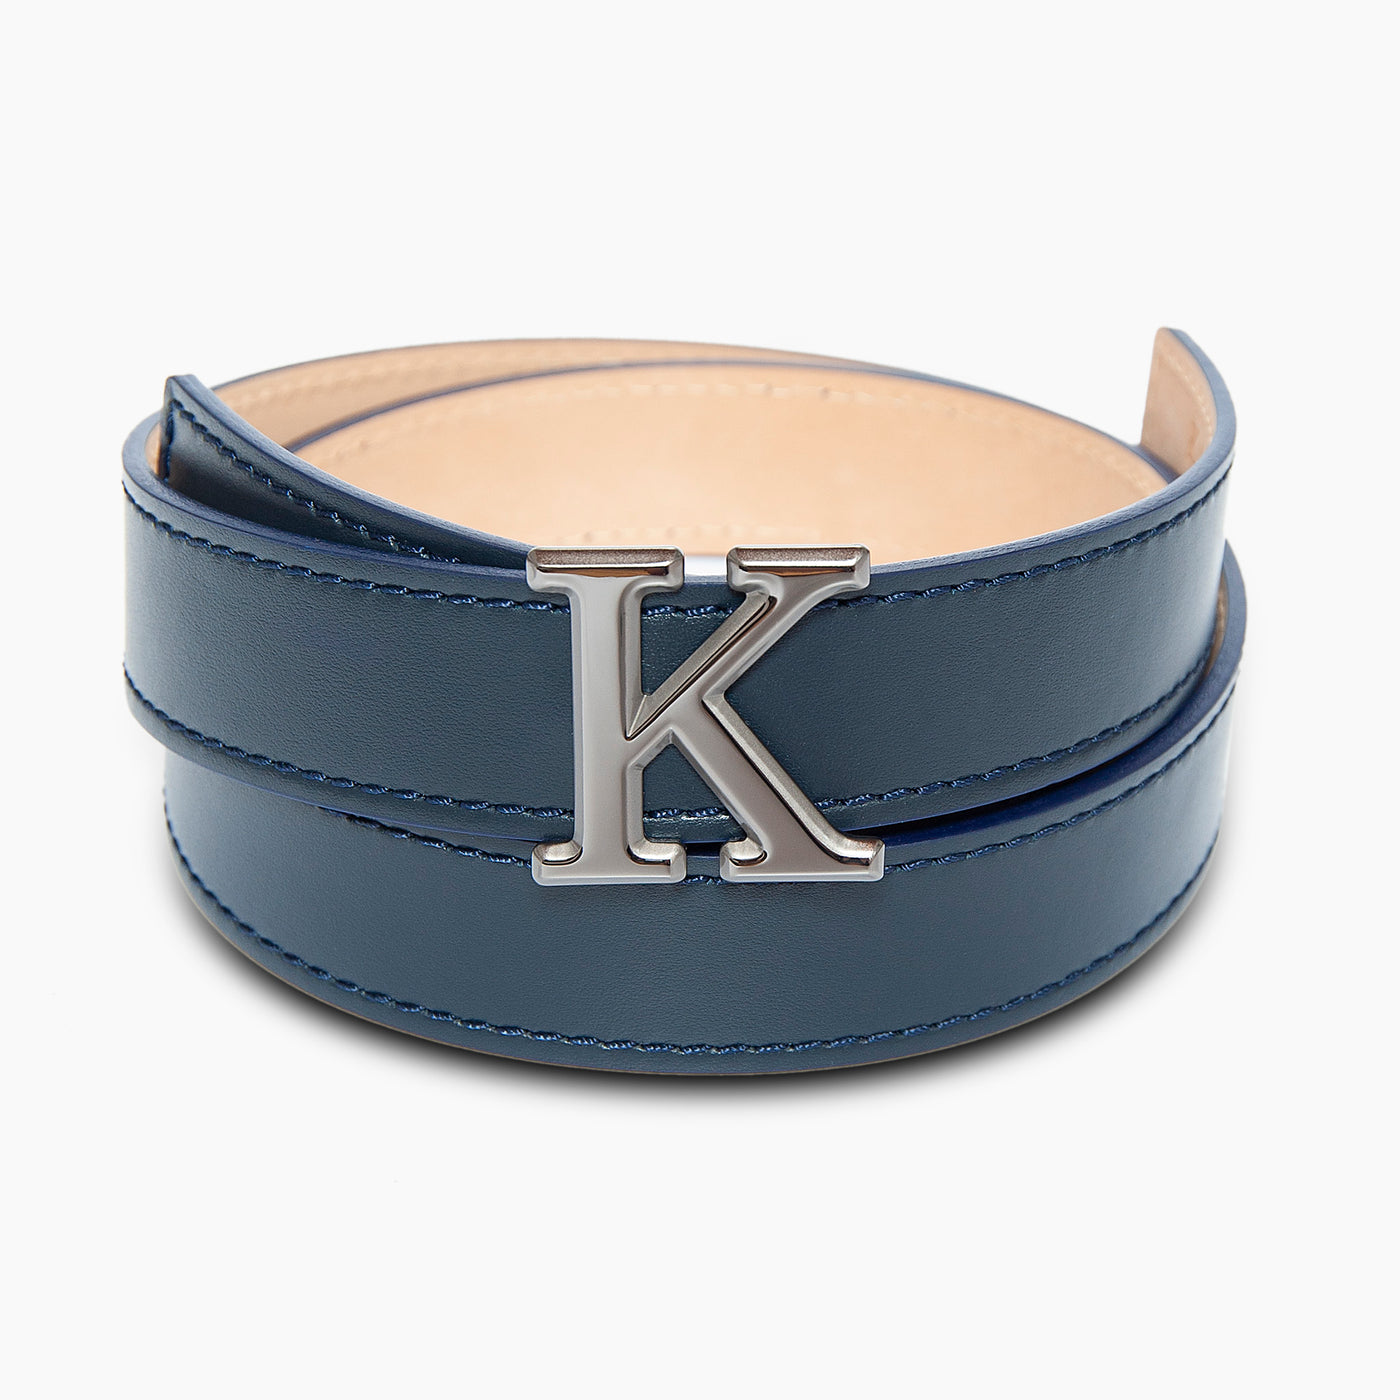 K Logo belt buckle and strap (dark blue) *